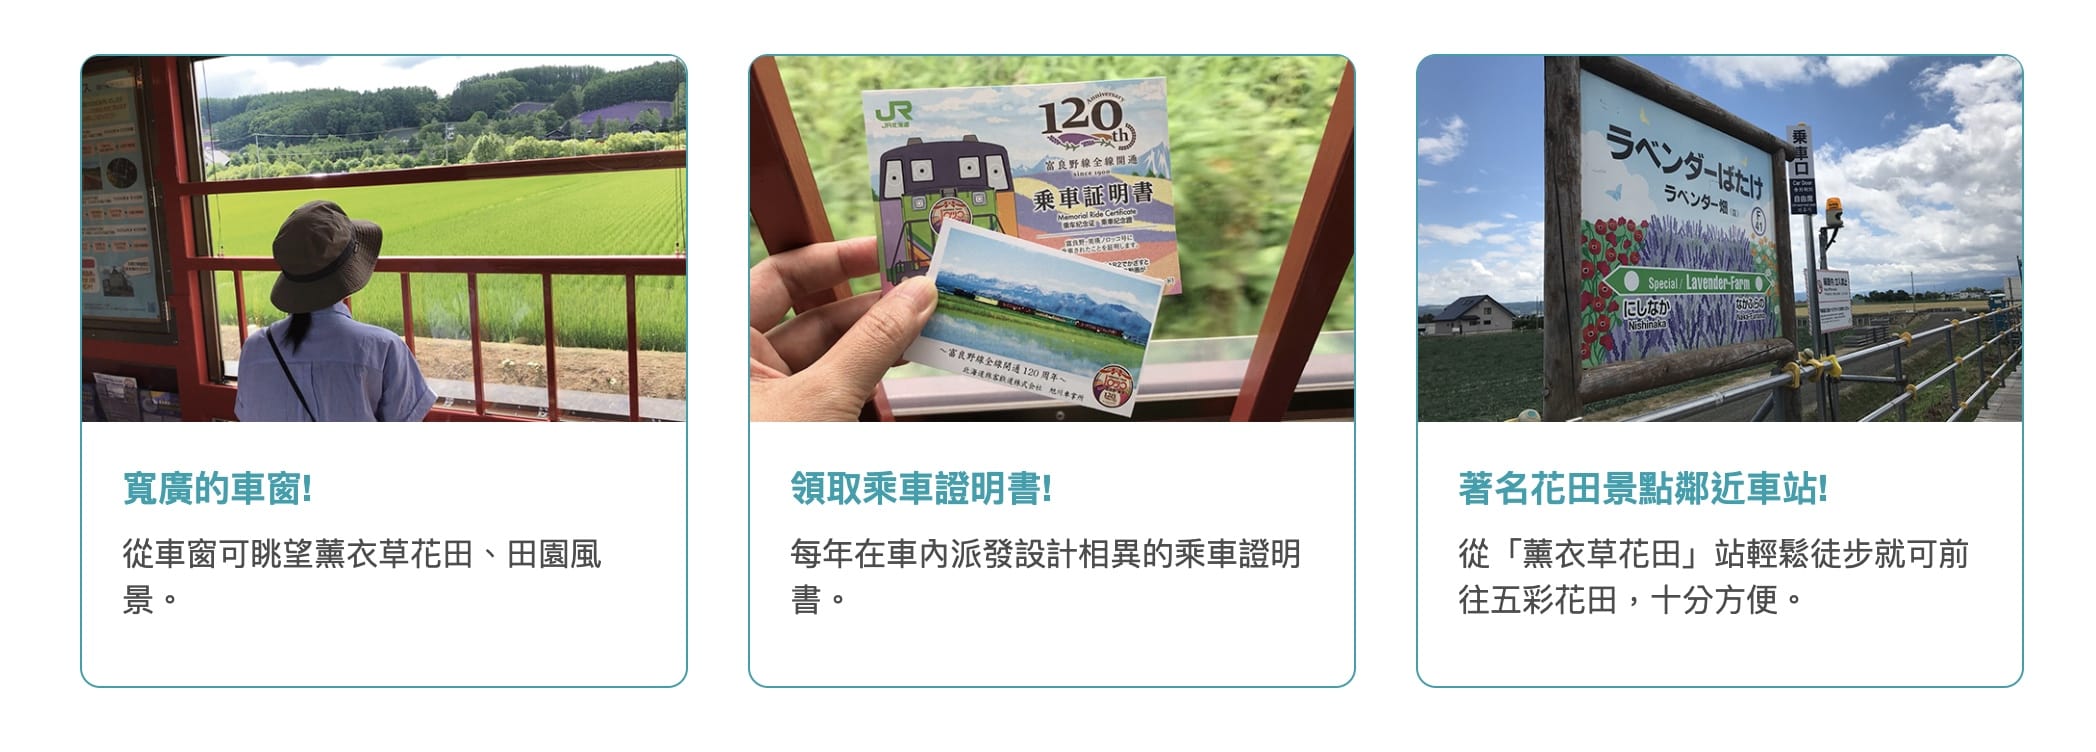 富良野到美瑛、旭川兩種交通方式：JR北海道鐵路、富良野巴士